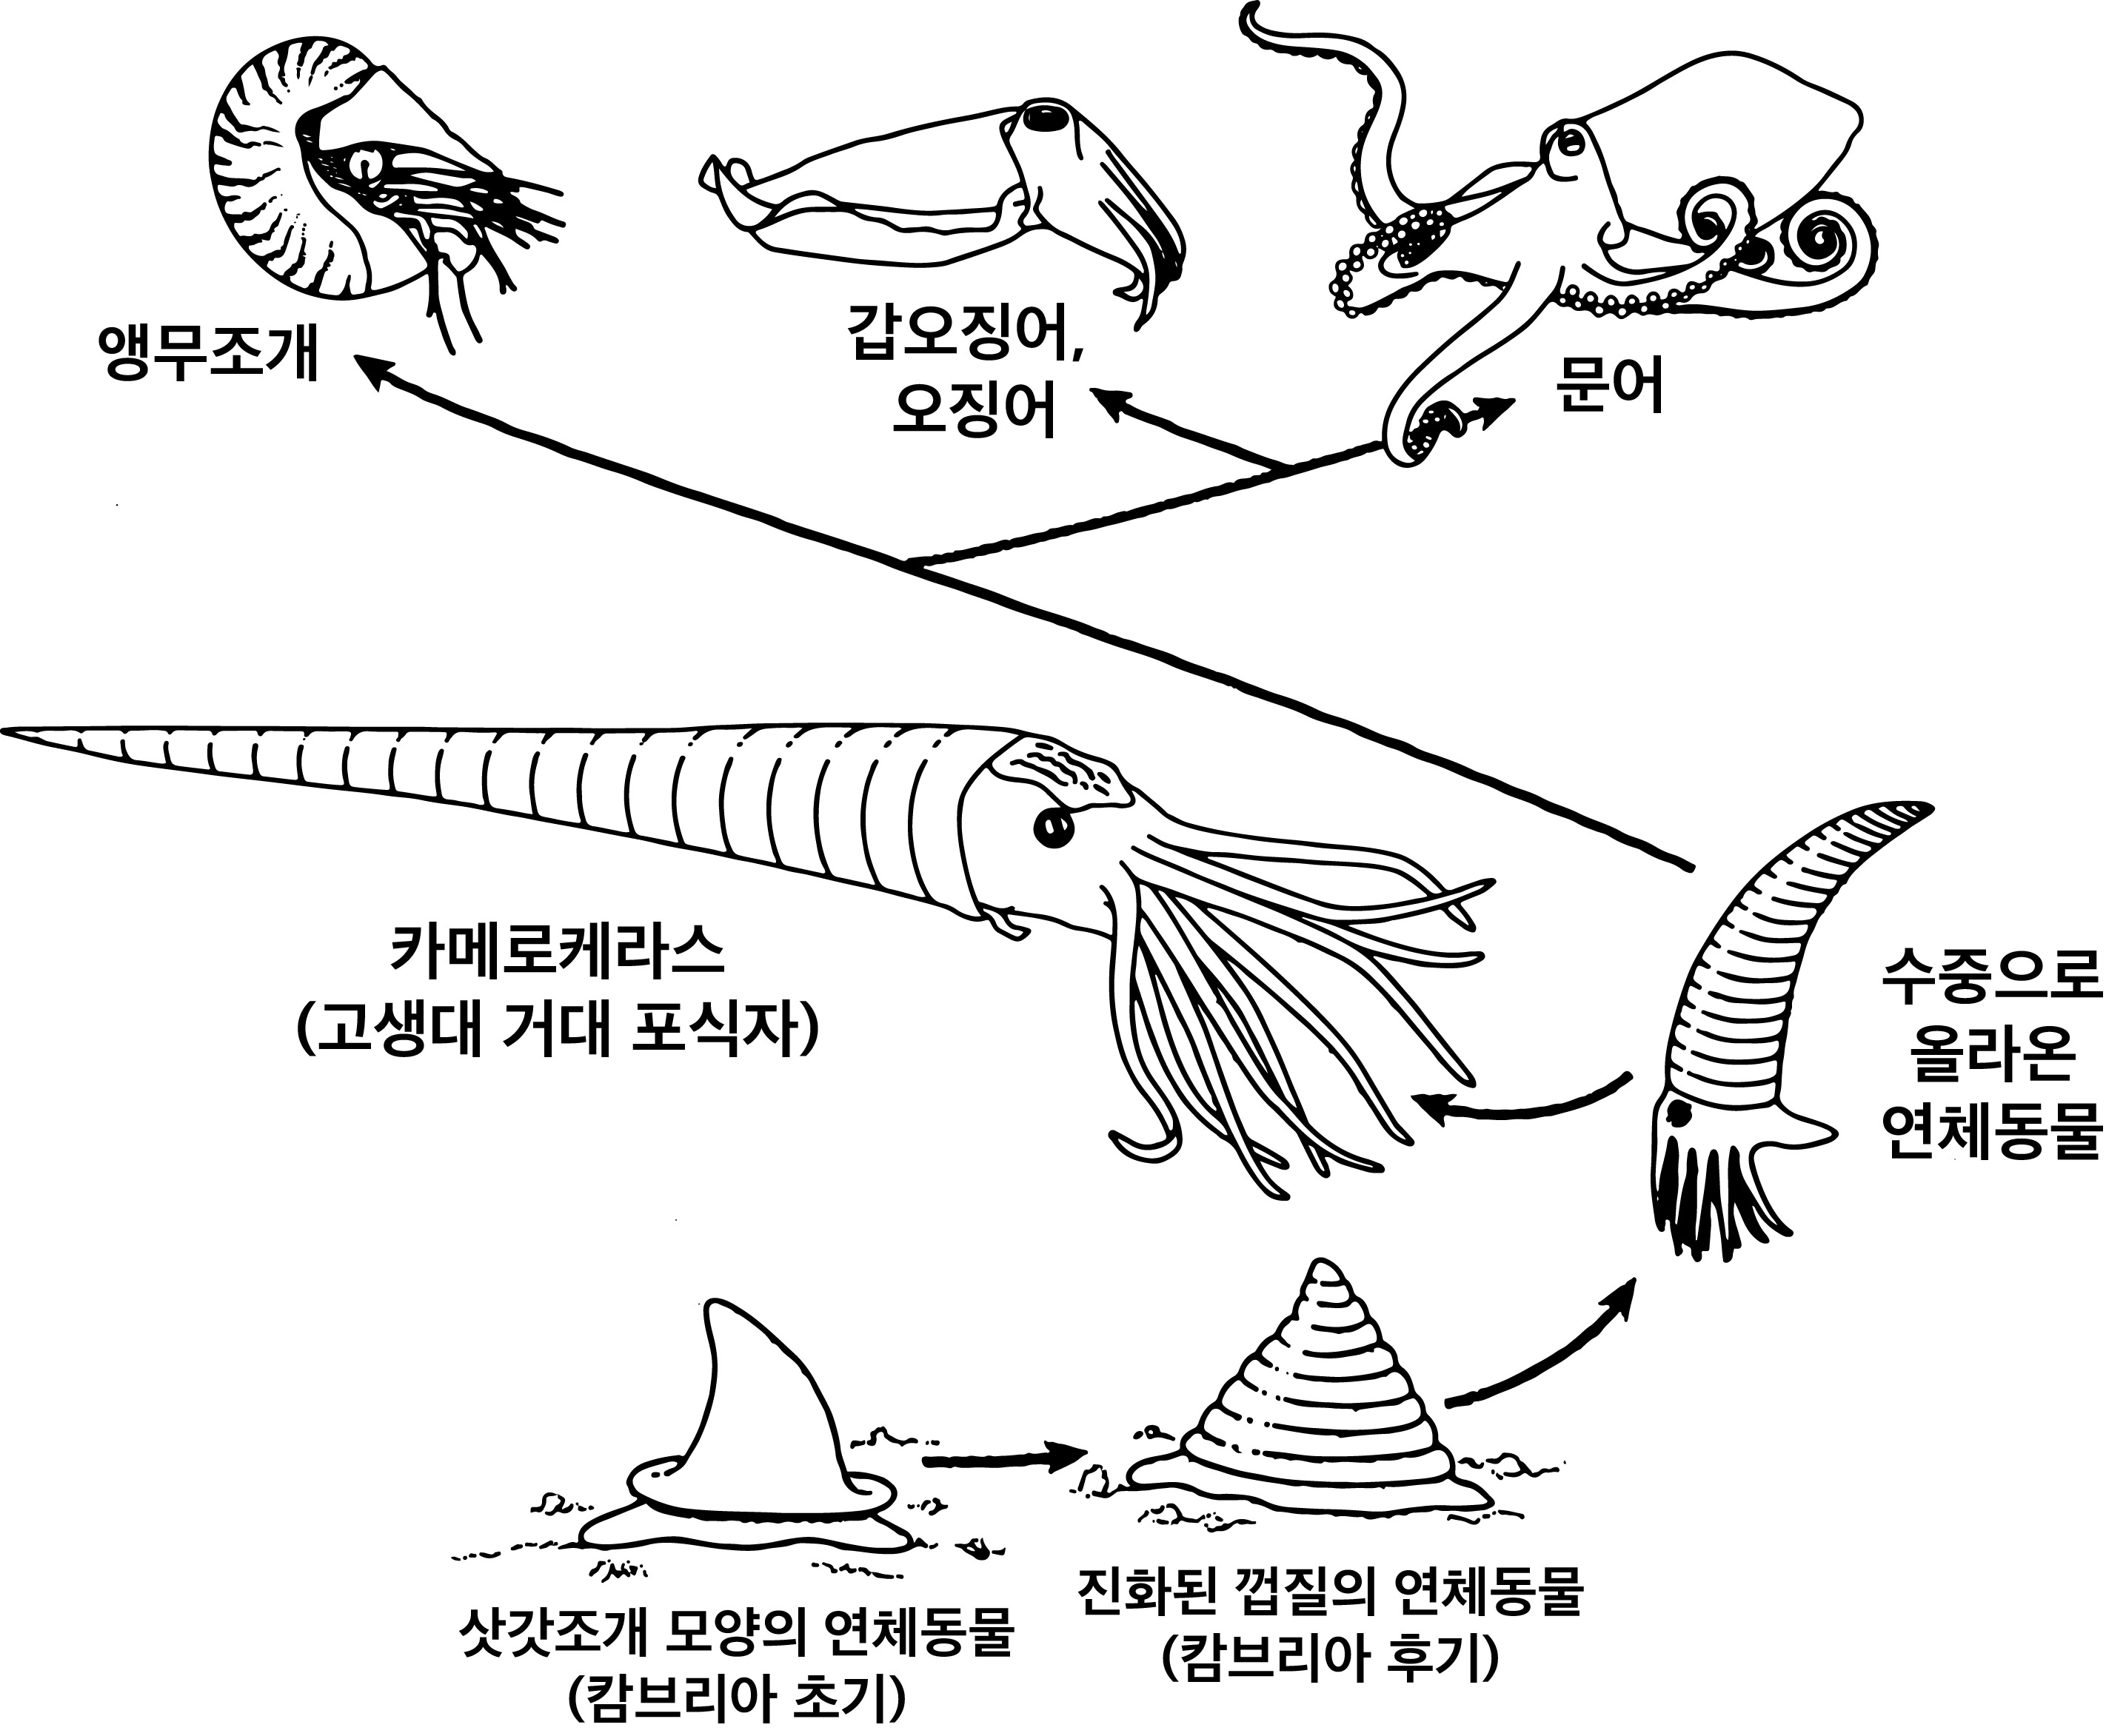 문어를 포함한 연체동물의 진화 과정. 연체동물 중에는 10미터에 이르는 포식자로 진화한 카메로케라스(Cameroceras)도 있지만 전부 멸종했다. 현재는 앵무조개, 갑오징어, 오징어, 문어 등이 생존한다.